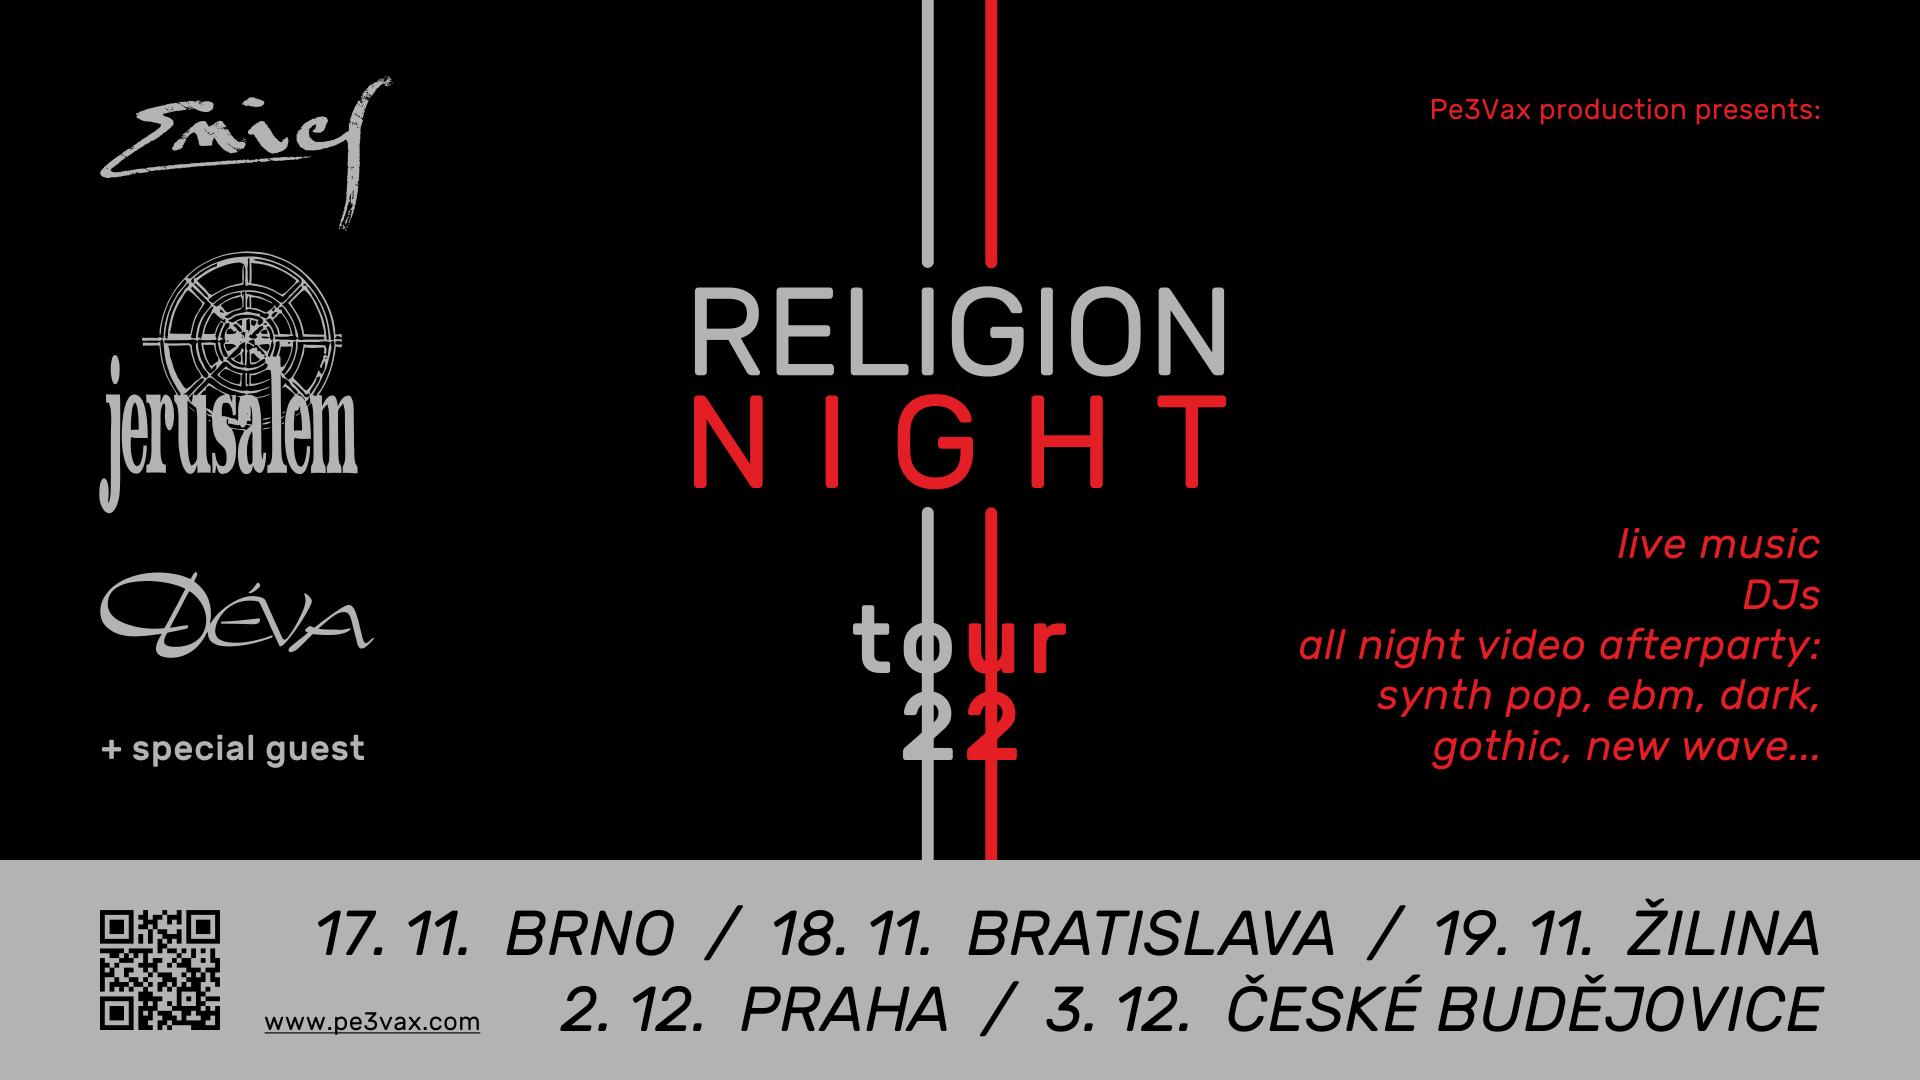 RELIGION NIGHT TOUR